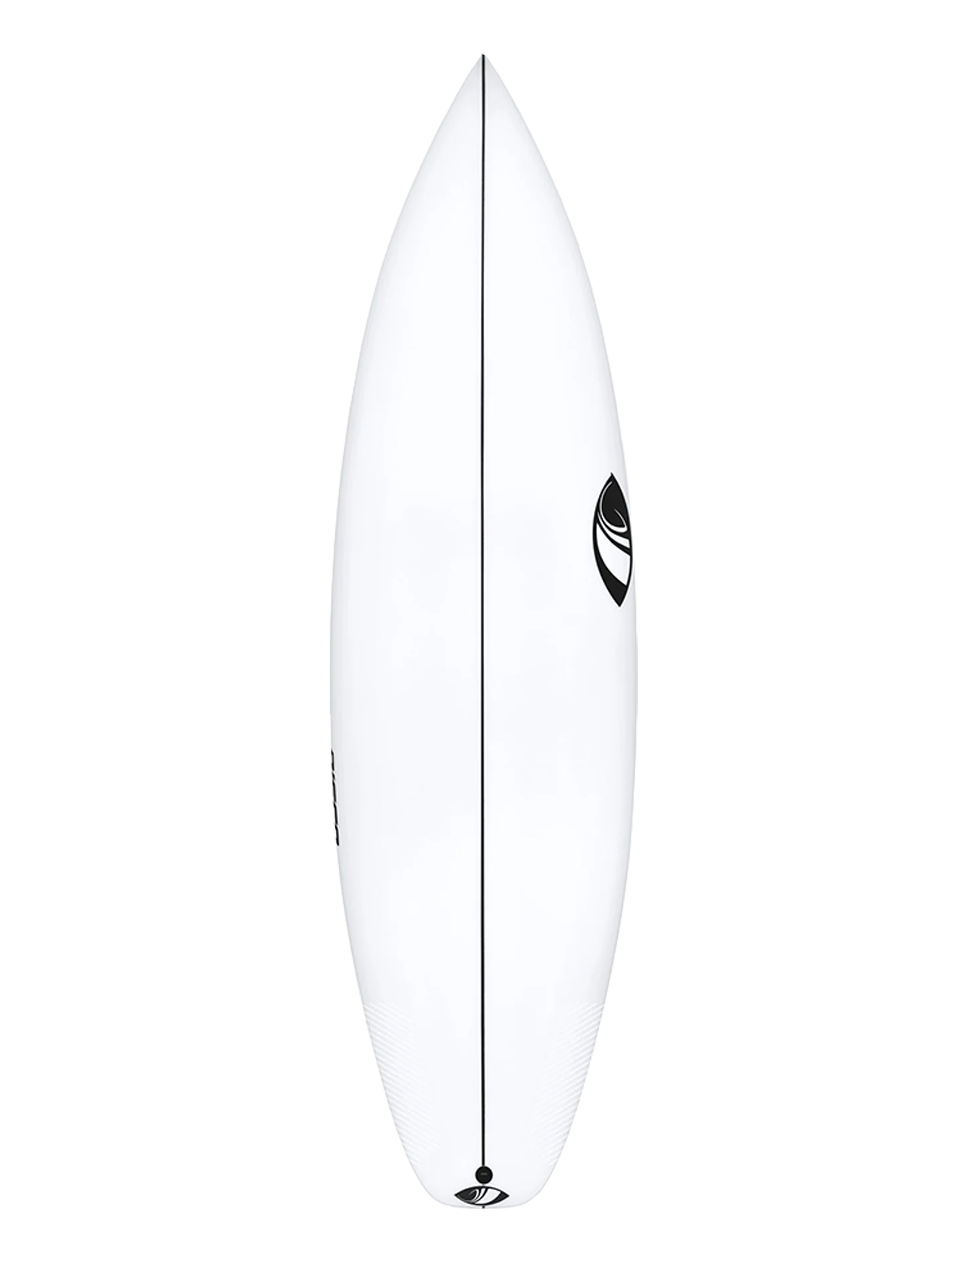 Prancha de Surf Sharp Curve Branca - SEA CLUB BOARDS